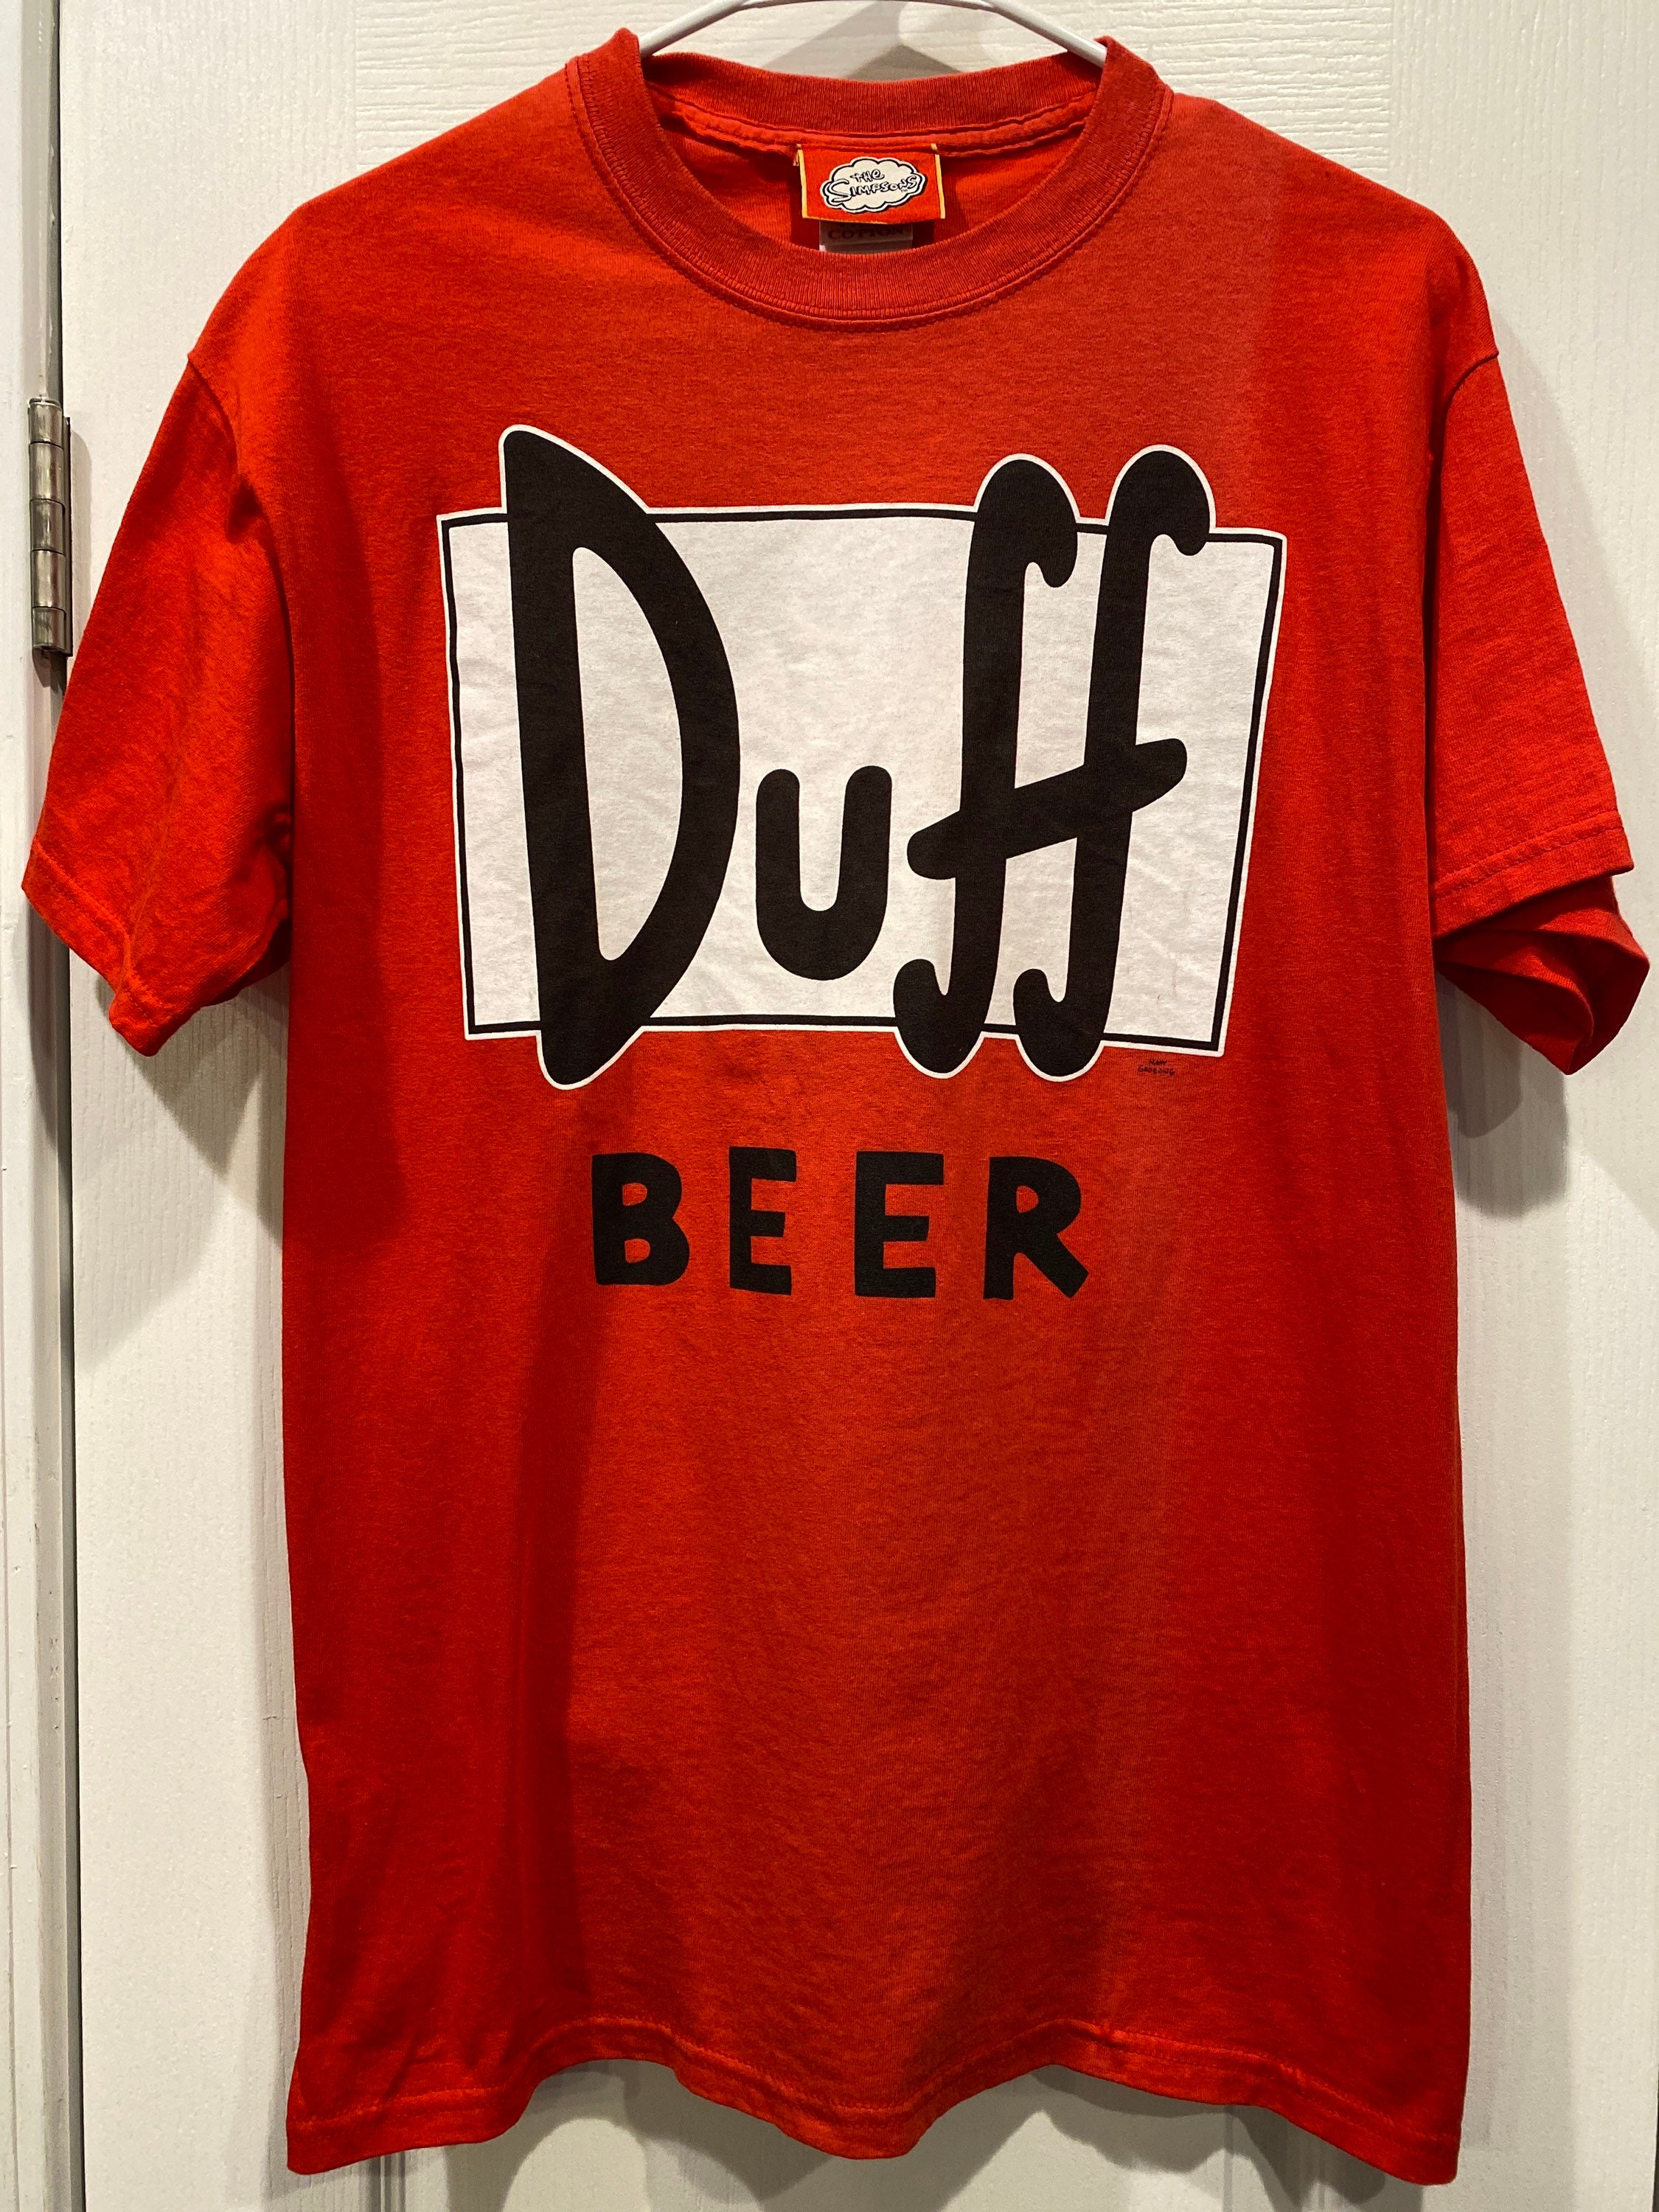 Vtg. the Simpsons Duff Beer T-shirt Sz M 20th Century Fox Film - Etsy